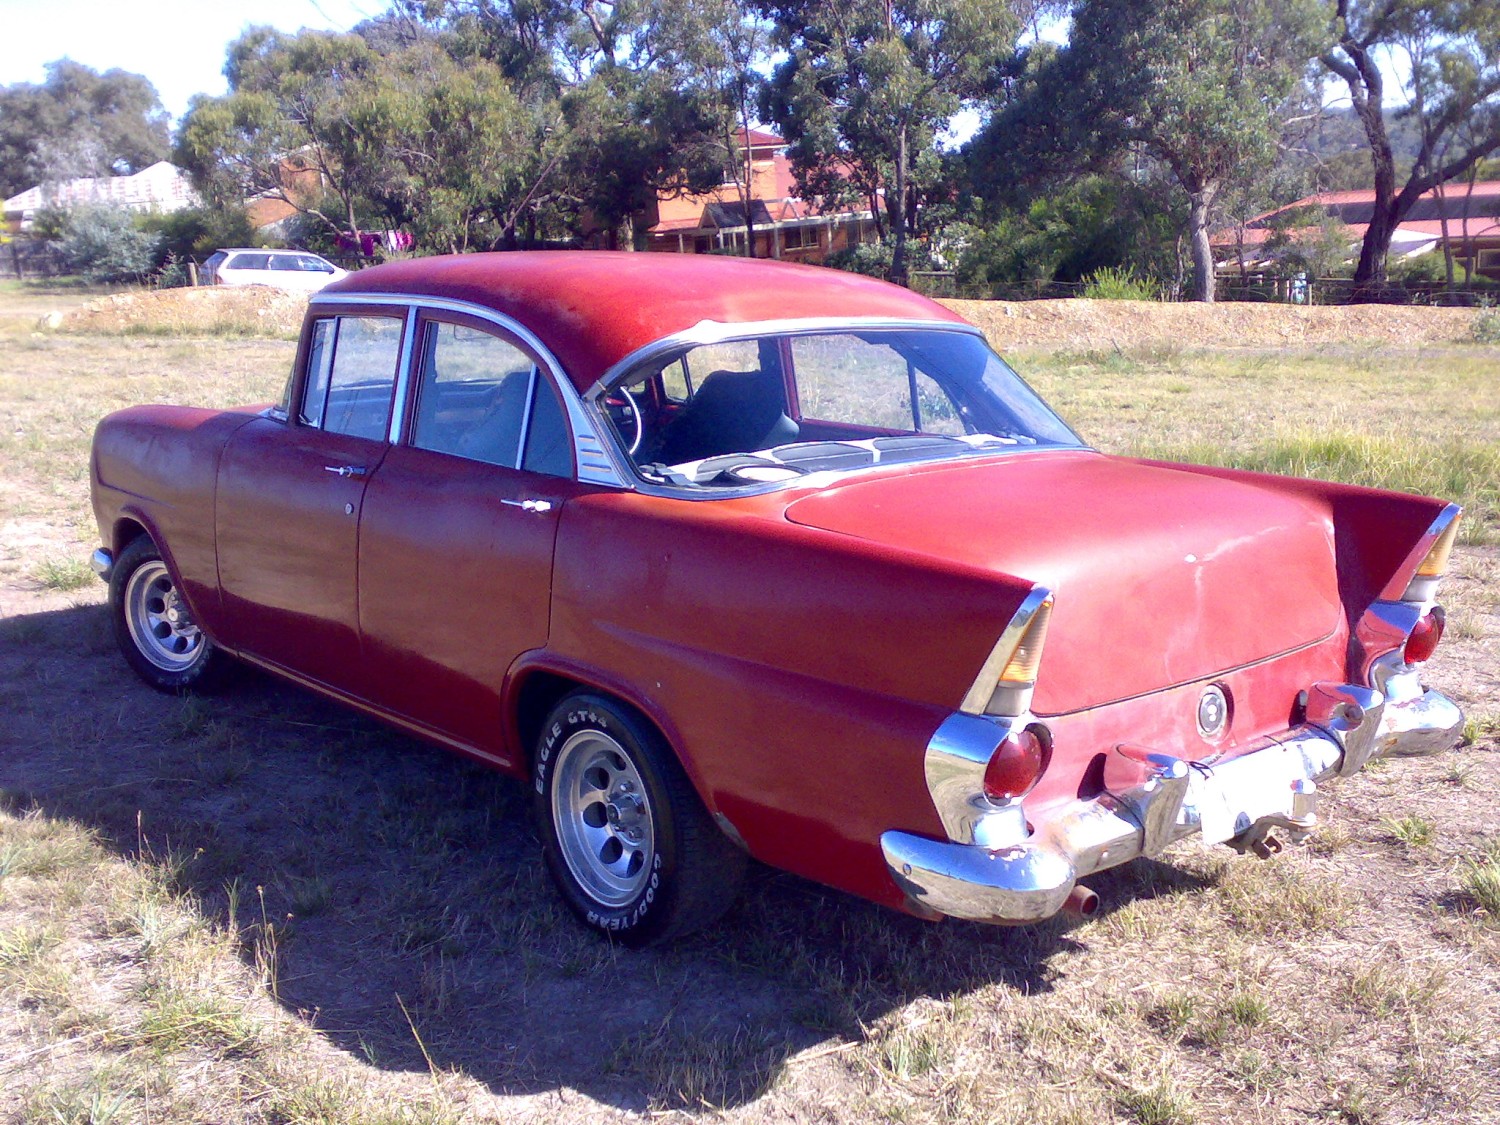 202,,Holden,5 speed manual (VK gearbox),Sedan,1962 Holden EK,HughO,1962,Holden EK,EK